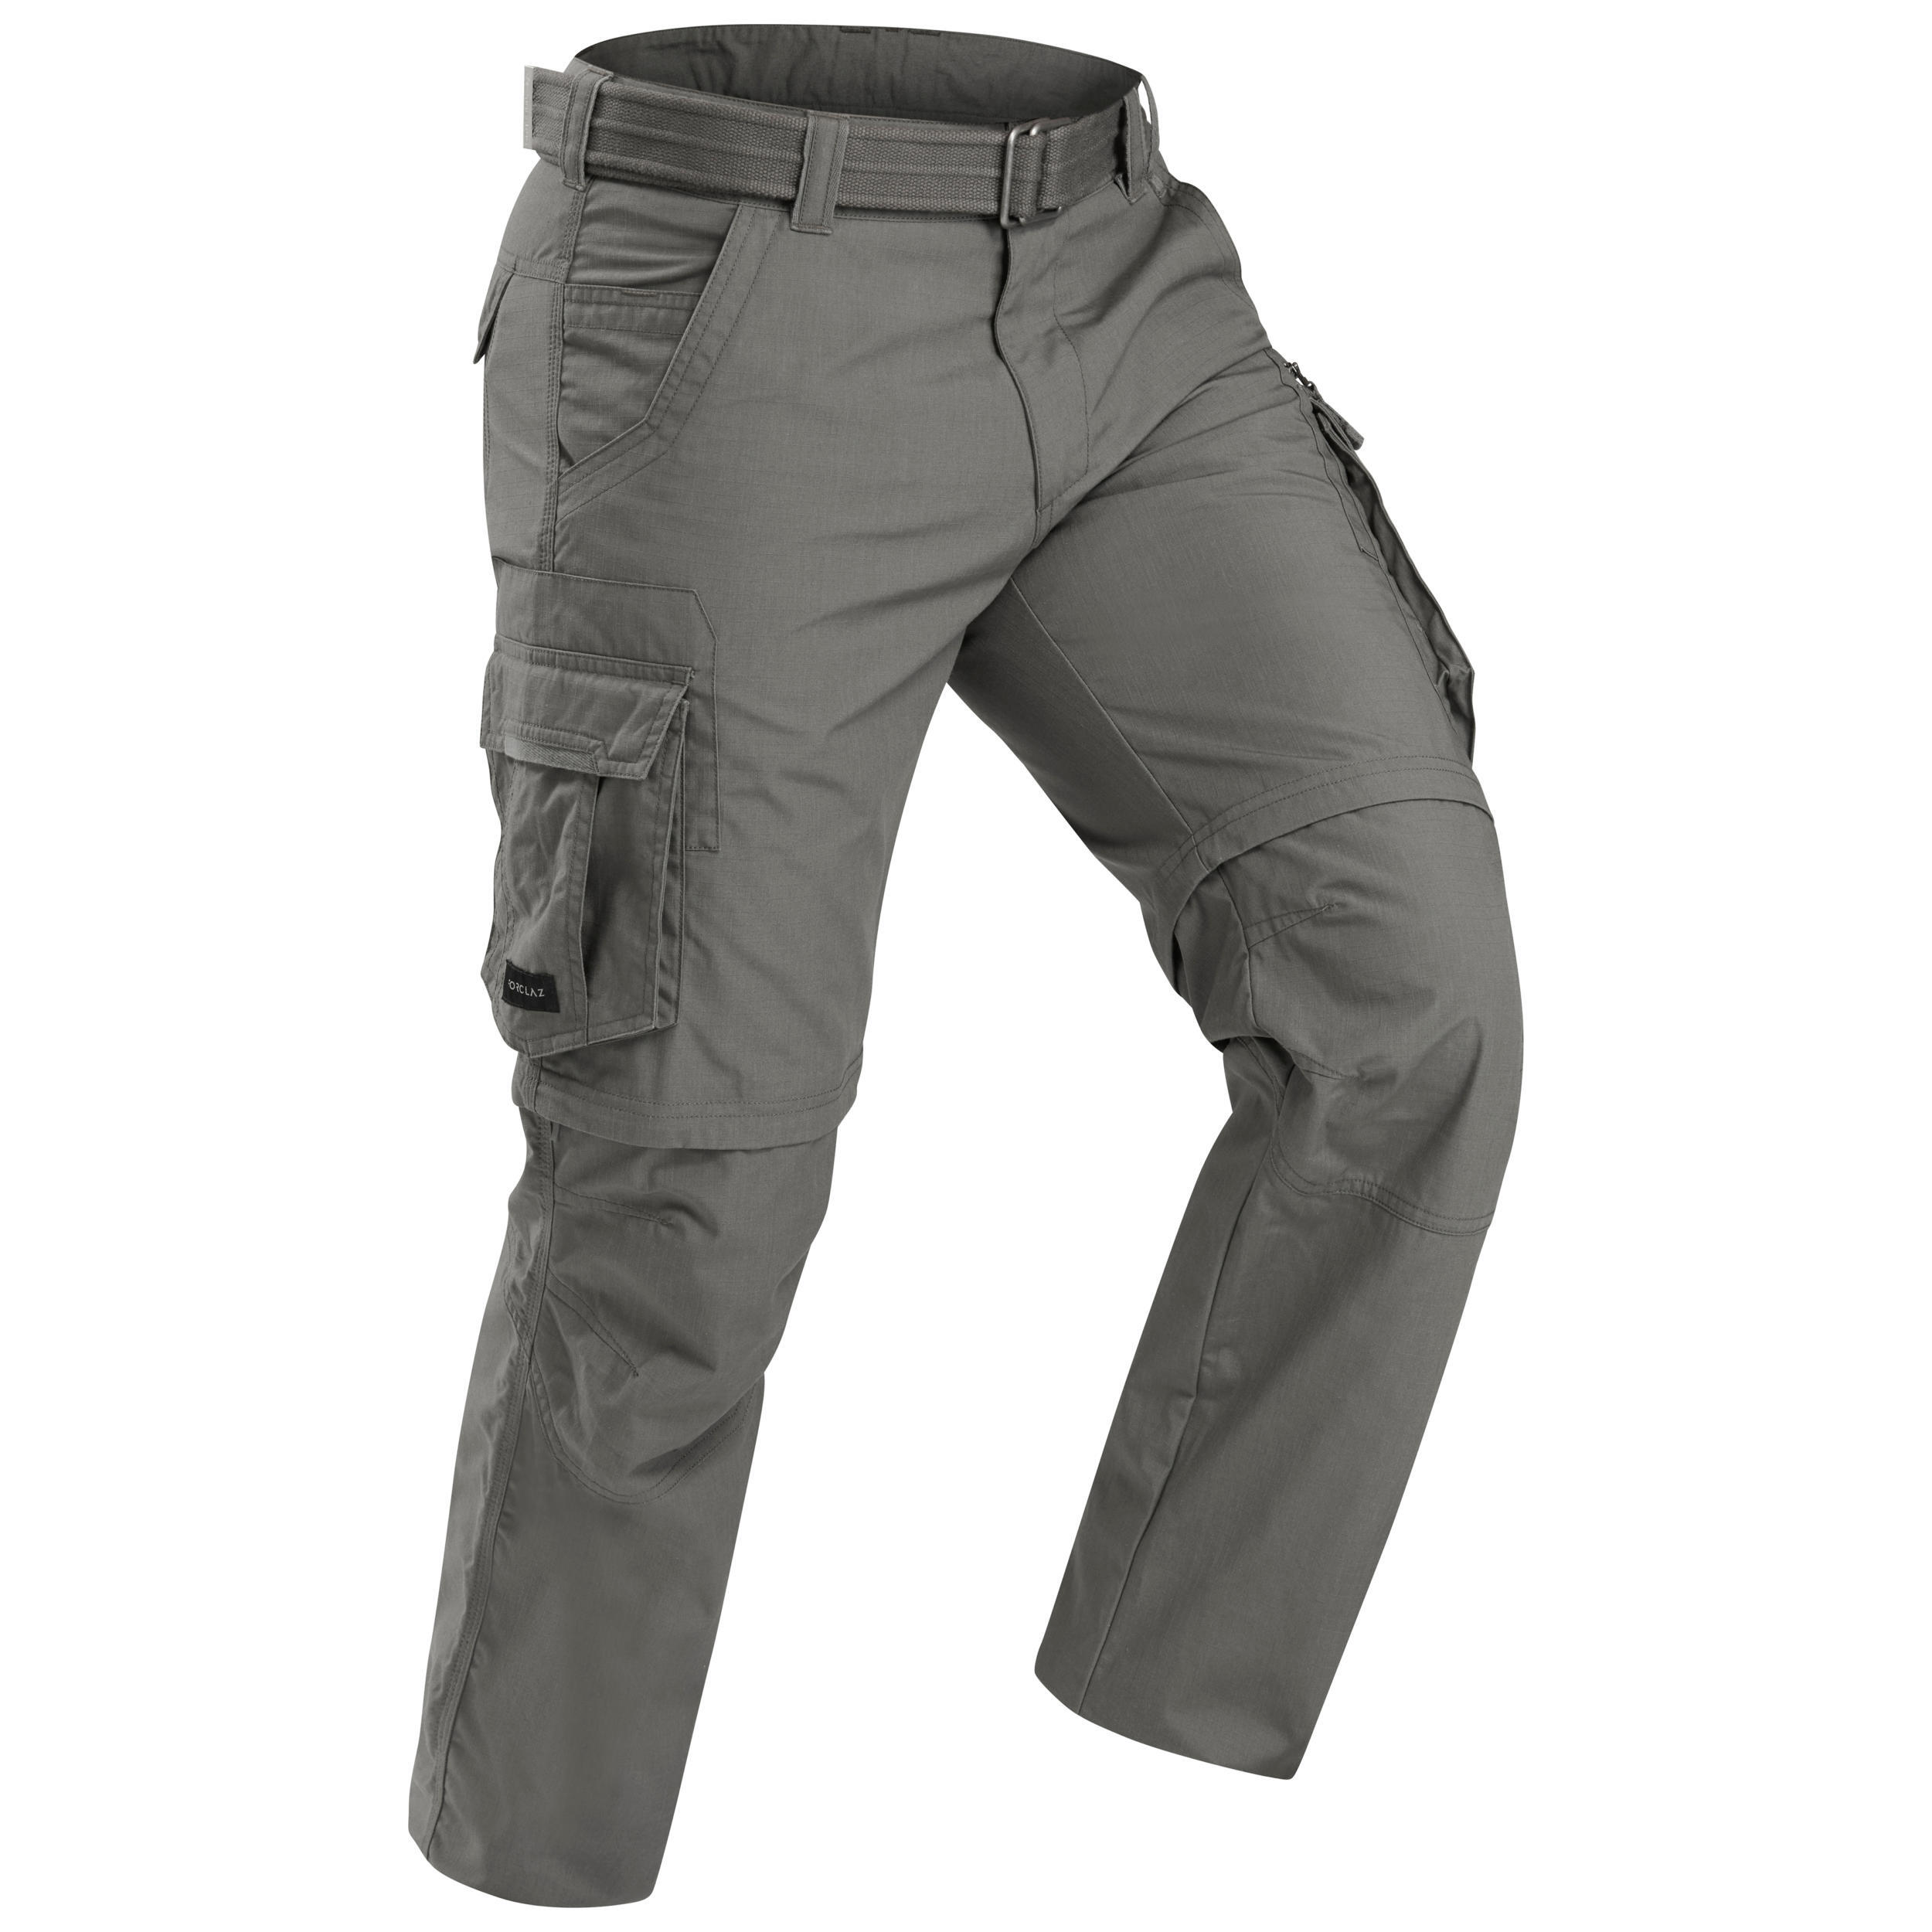 Men's Travel Trekking Zip-Off Cargo Trousers - Travel 100 Zip-Off - khaki 4/14